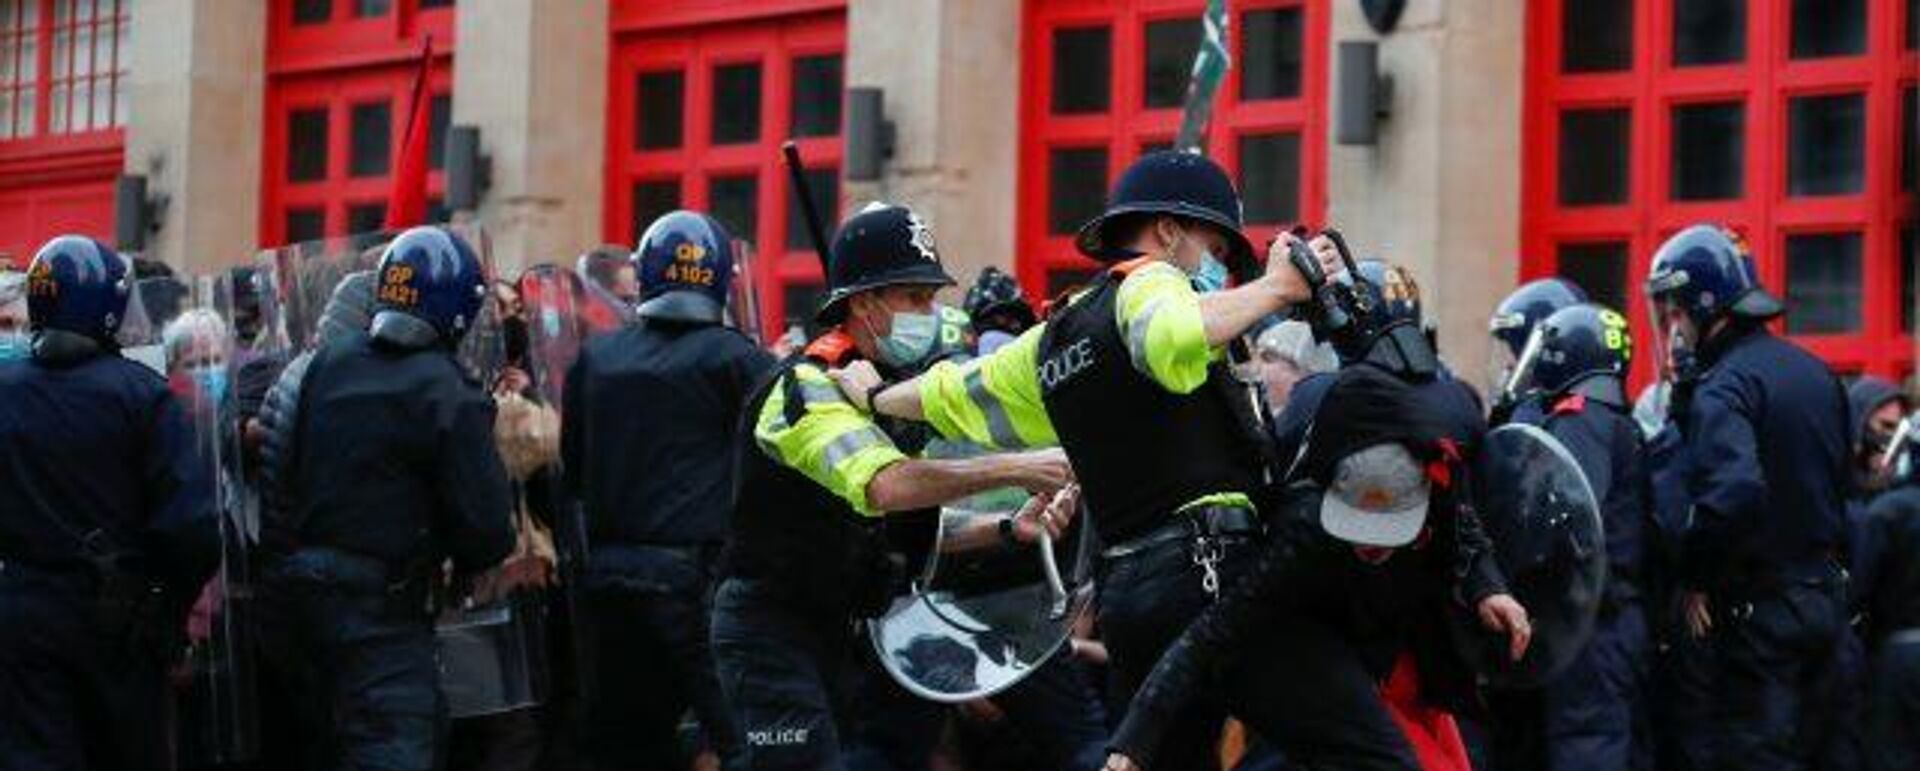 Manifestantes a favor de los derechos civiles se enfrentan a la Policía en Reino Unido - Sputnik Mundo, 1920, 22.03.2021